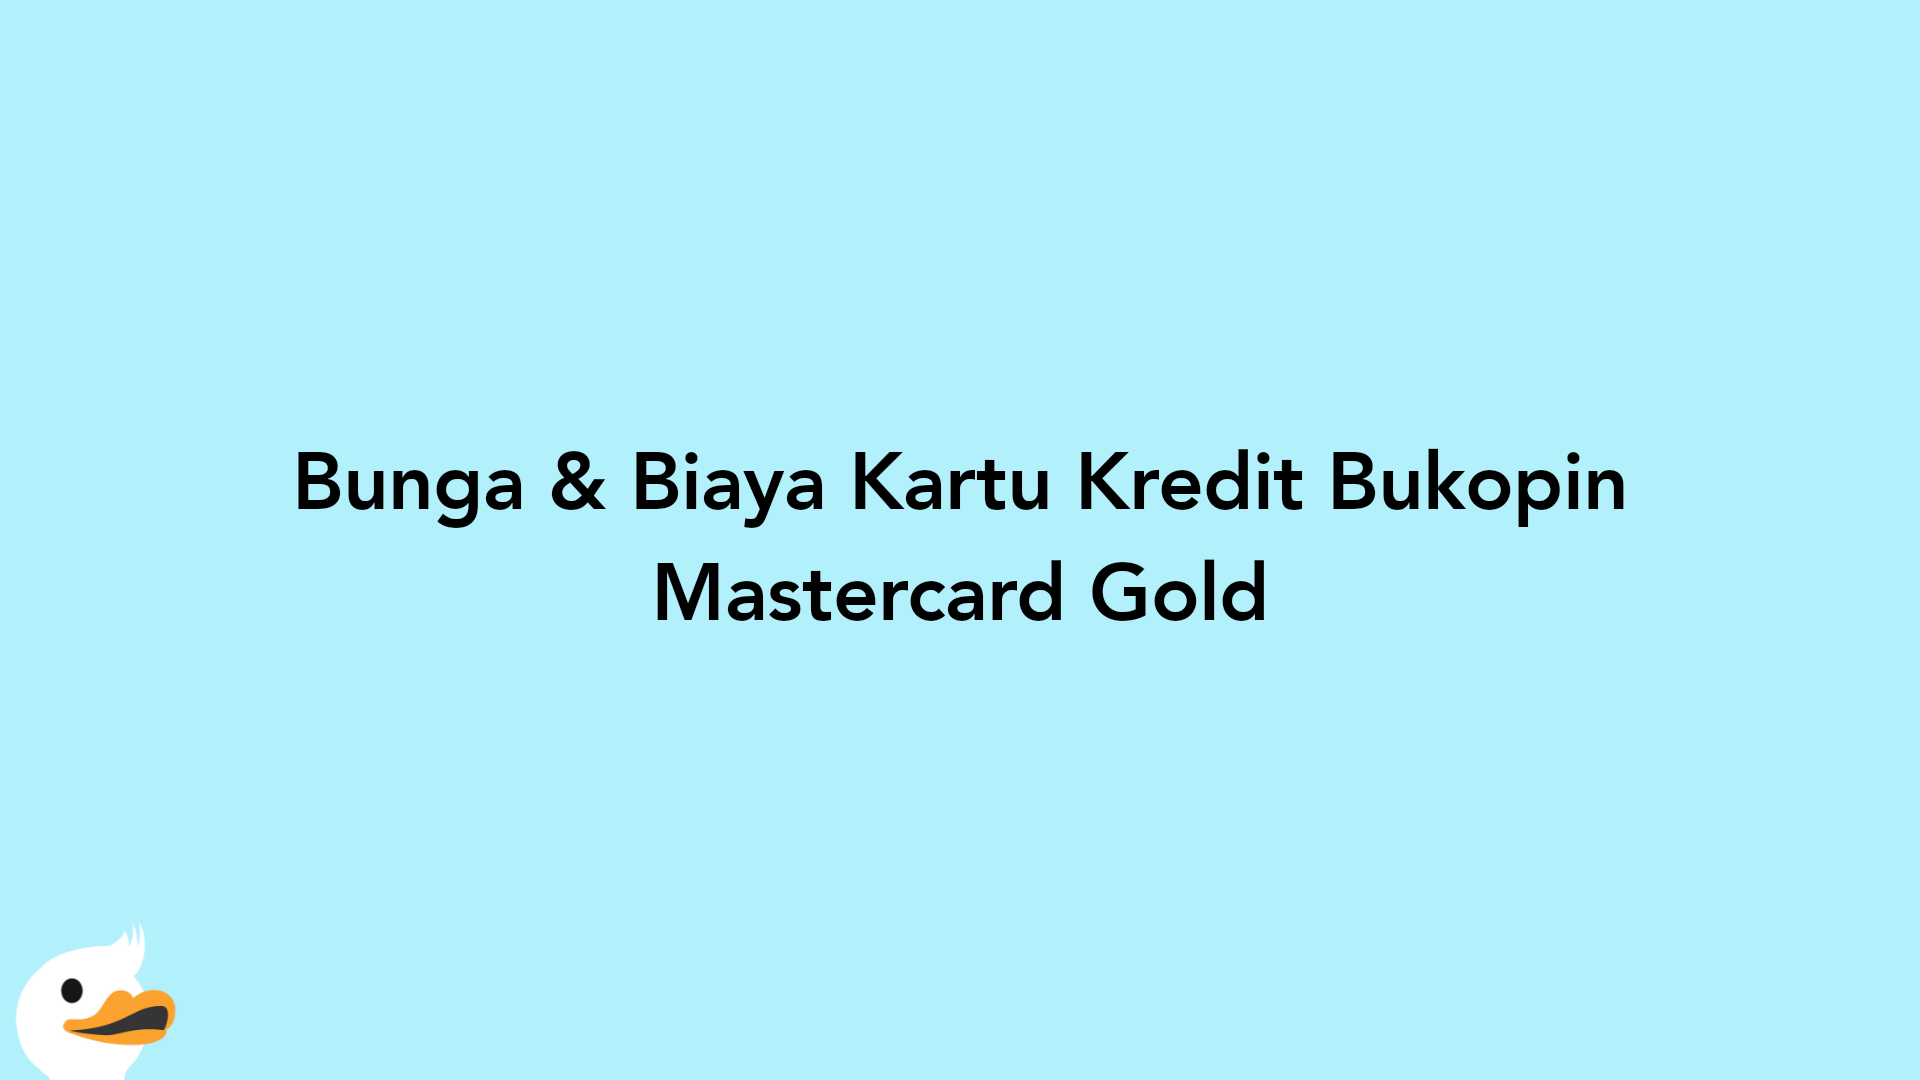 Bunga & Biaya Kartu Kredit Bukopin Mastercard Gold